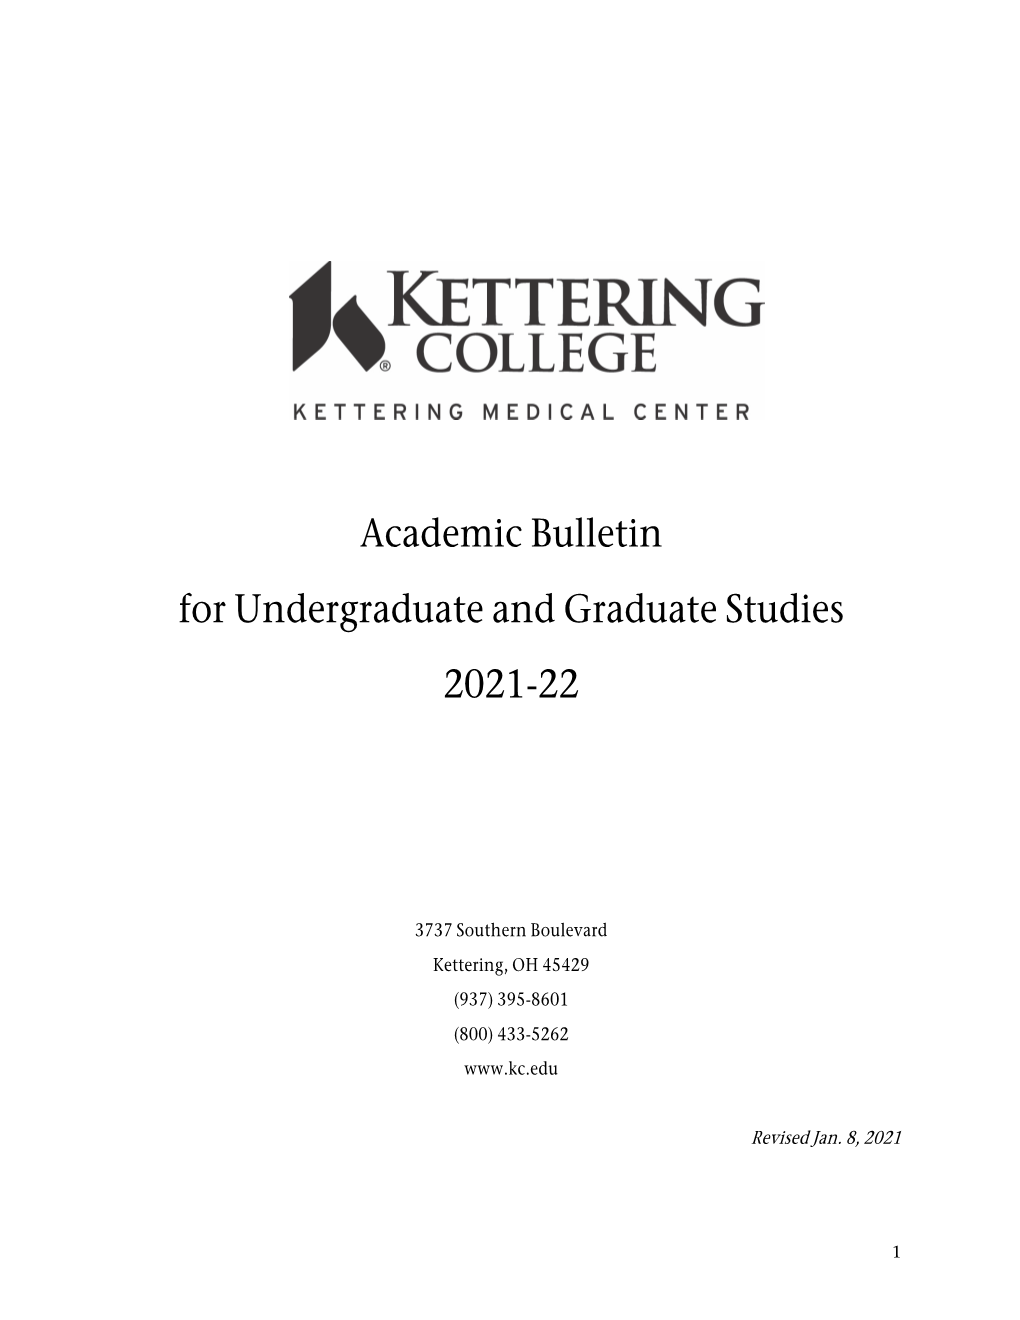 Academic Bulletin for Undergraduate and Graduate Studies 2021-22